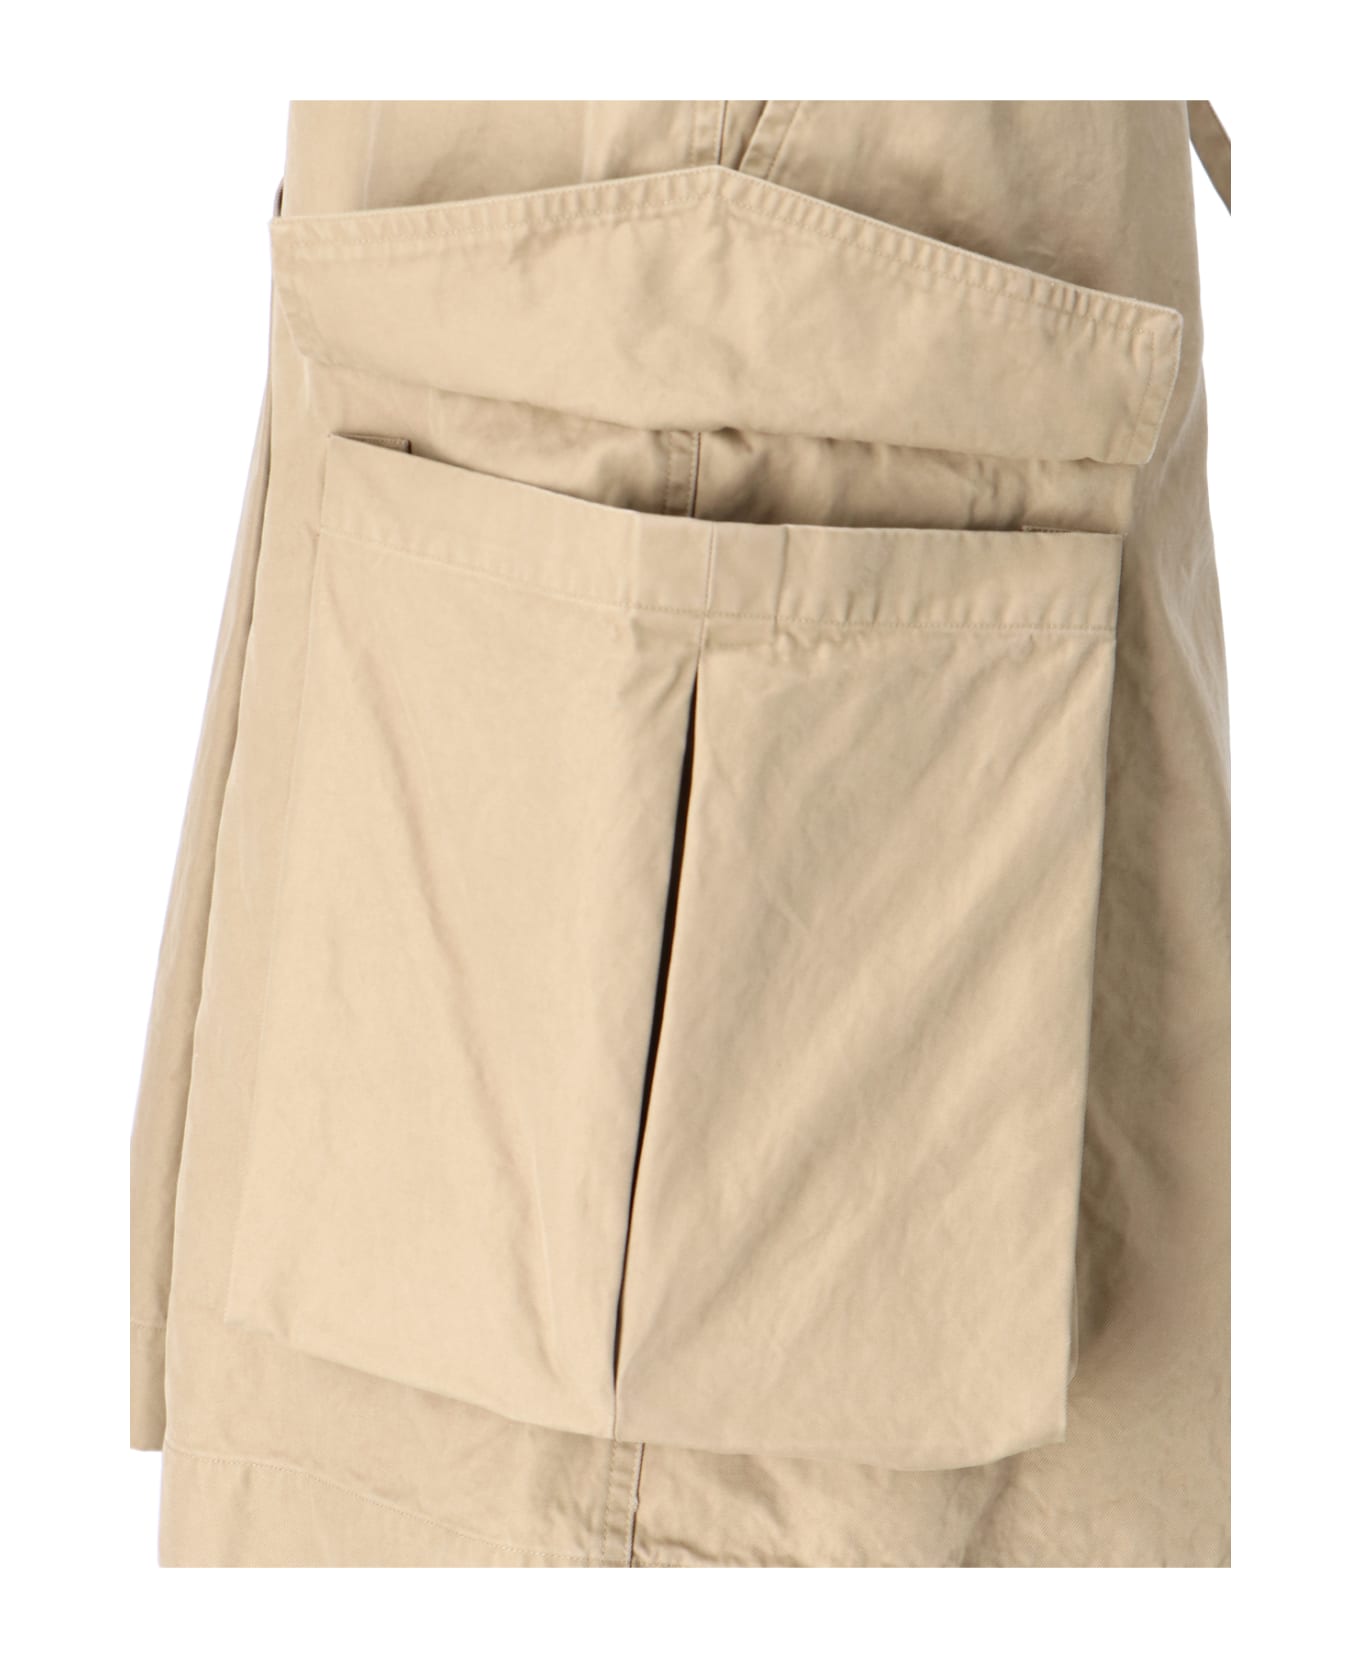 Dries Van Noten Kilt Design Skirt - Beige スカート